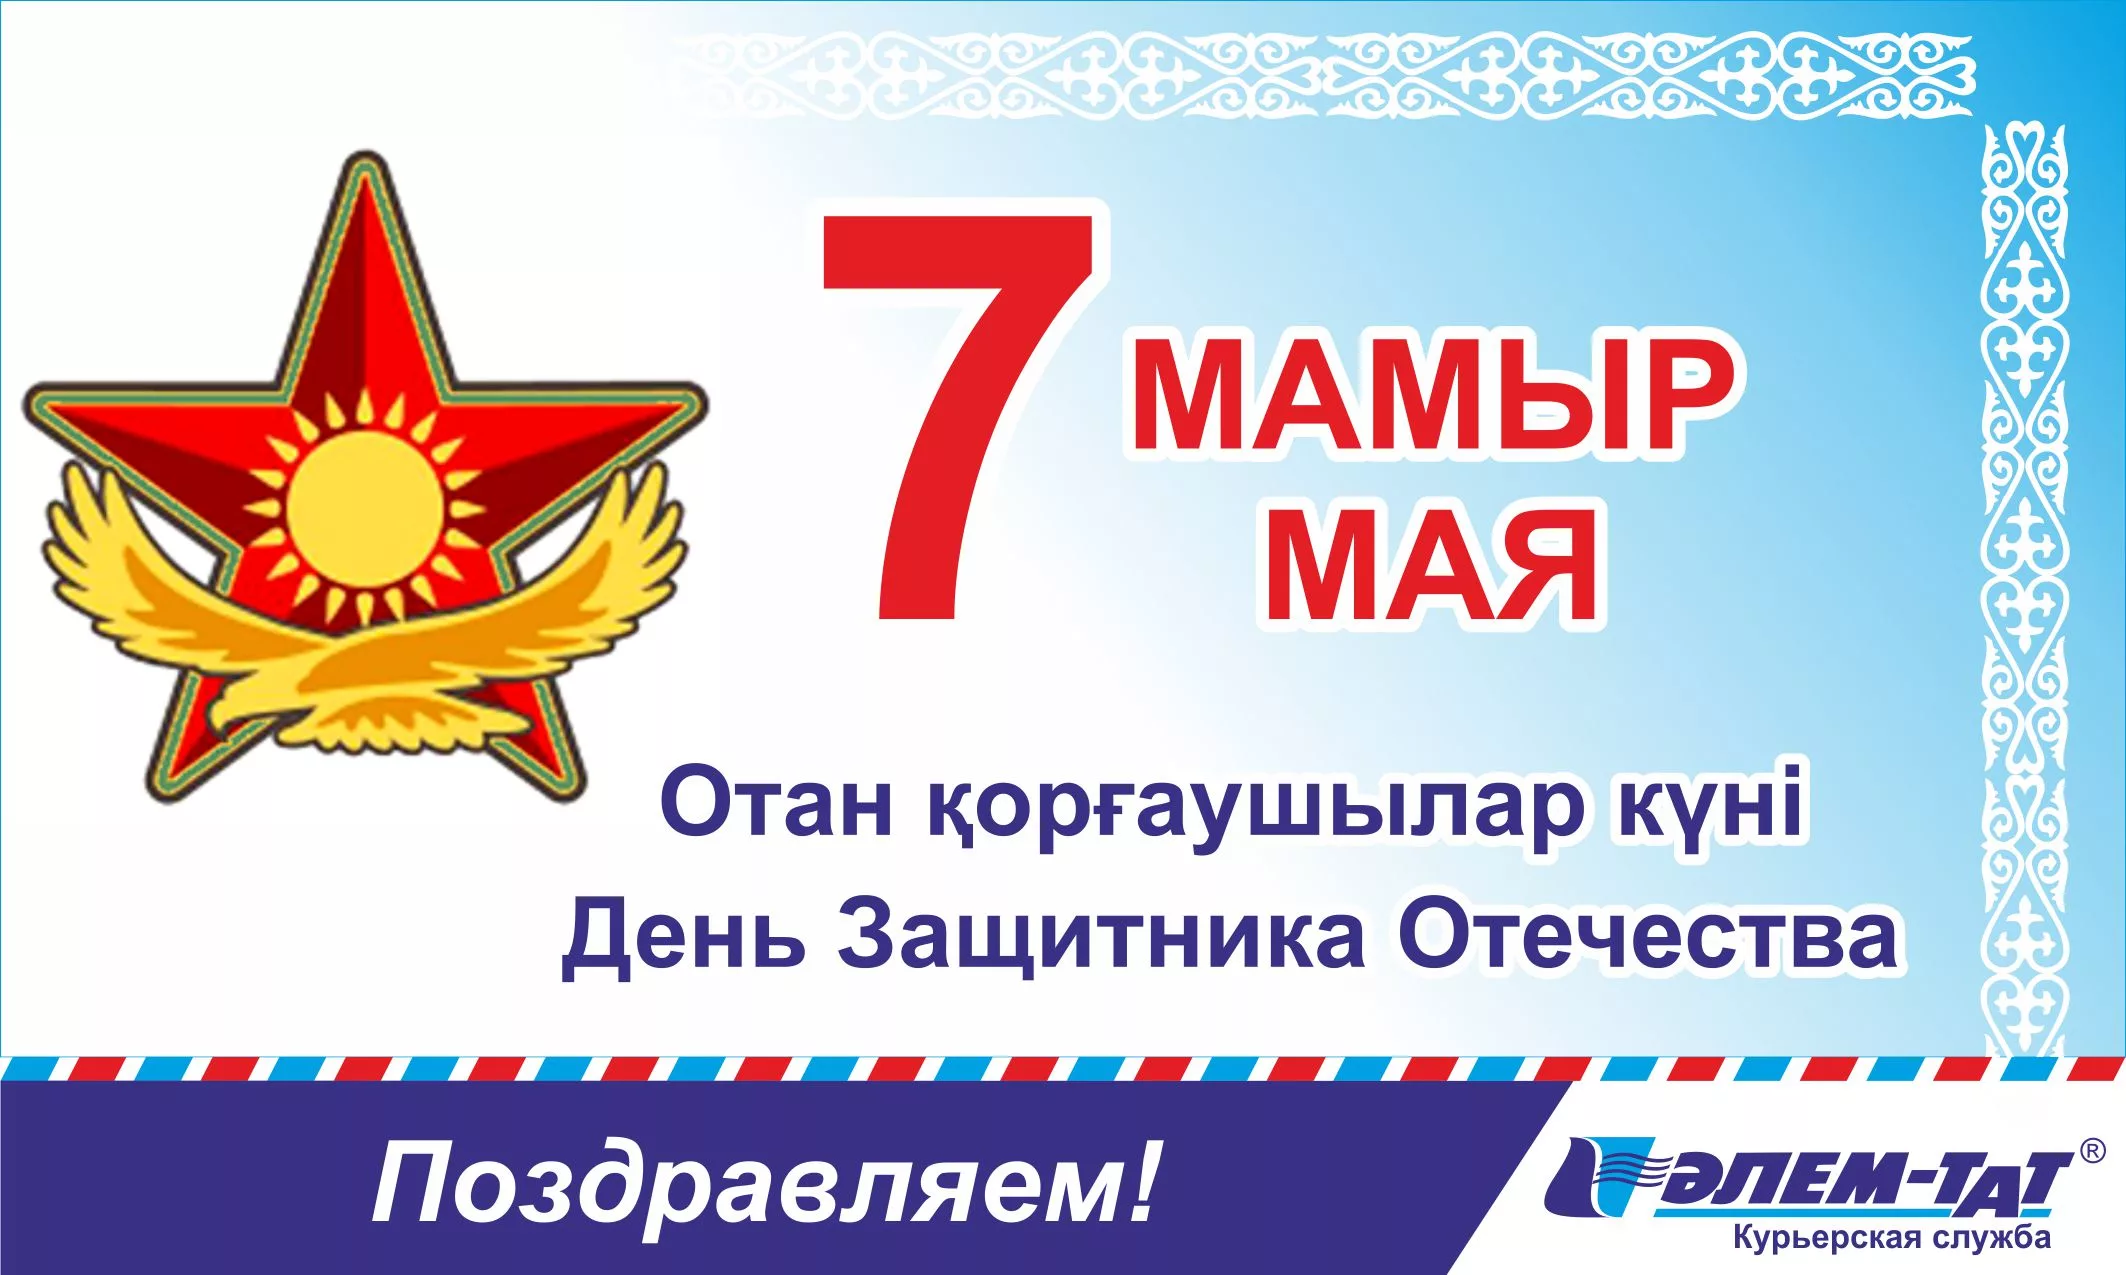 Фото Поздравления любимому с Днем защитника Отечества в Казахстане (7 Мая) #63